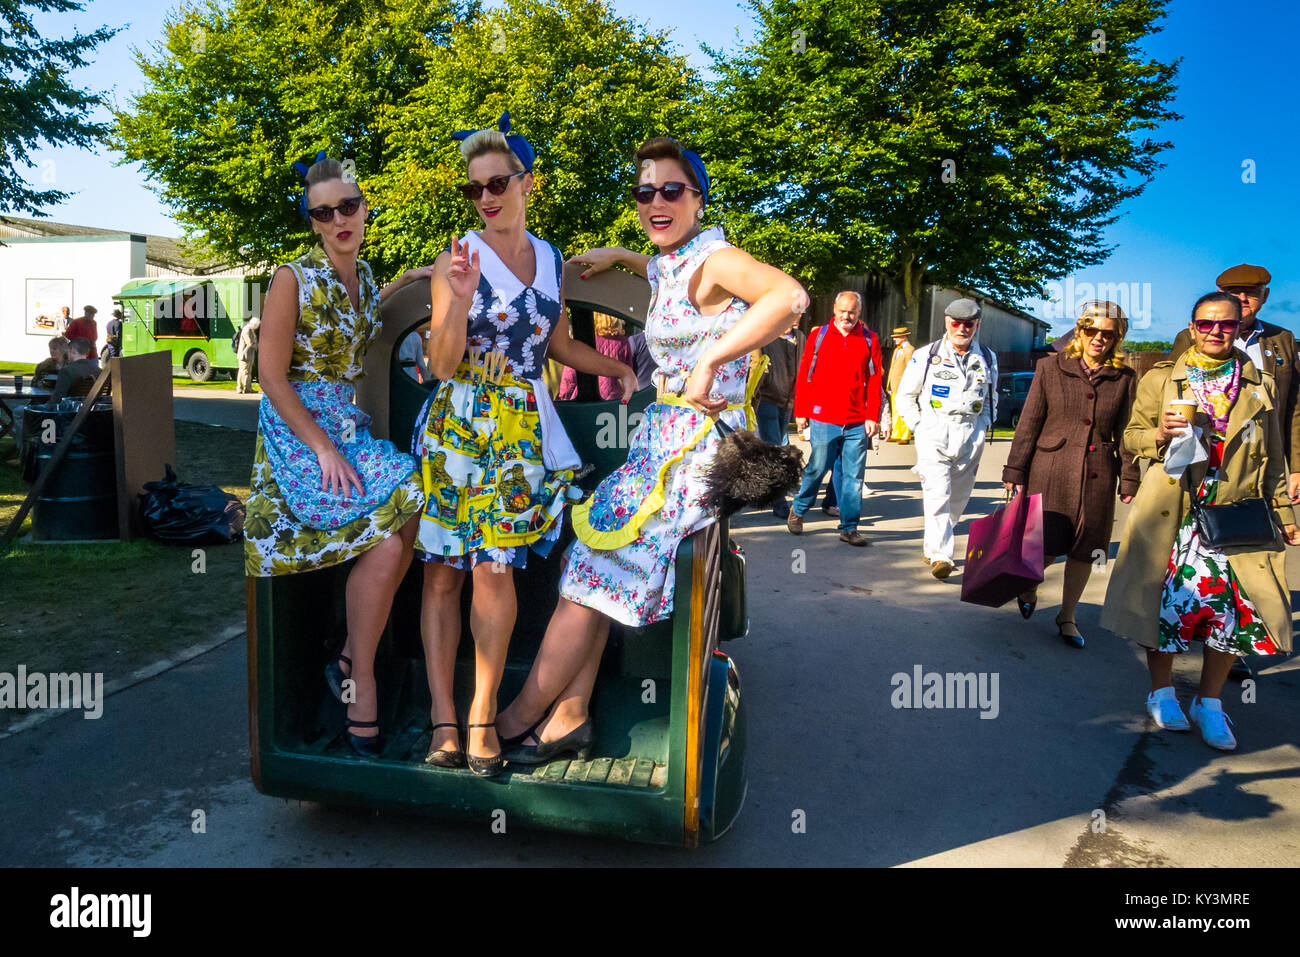 Trois actrices agissant comme des ménagères en1940's clothing au Goodwood Revival, Goodwood West Sussex UK 2017 Banque D'Images